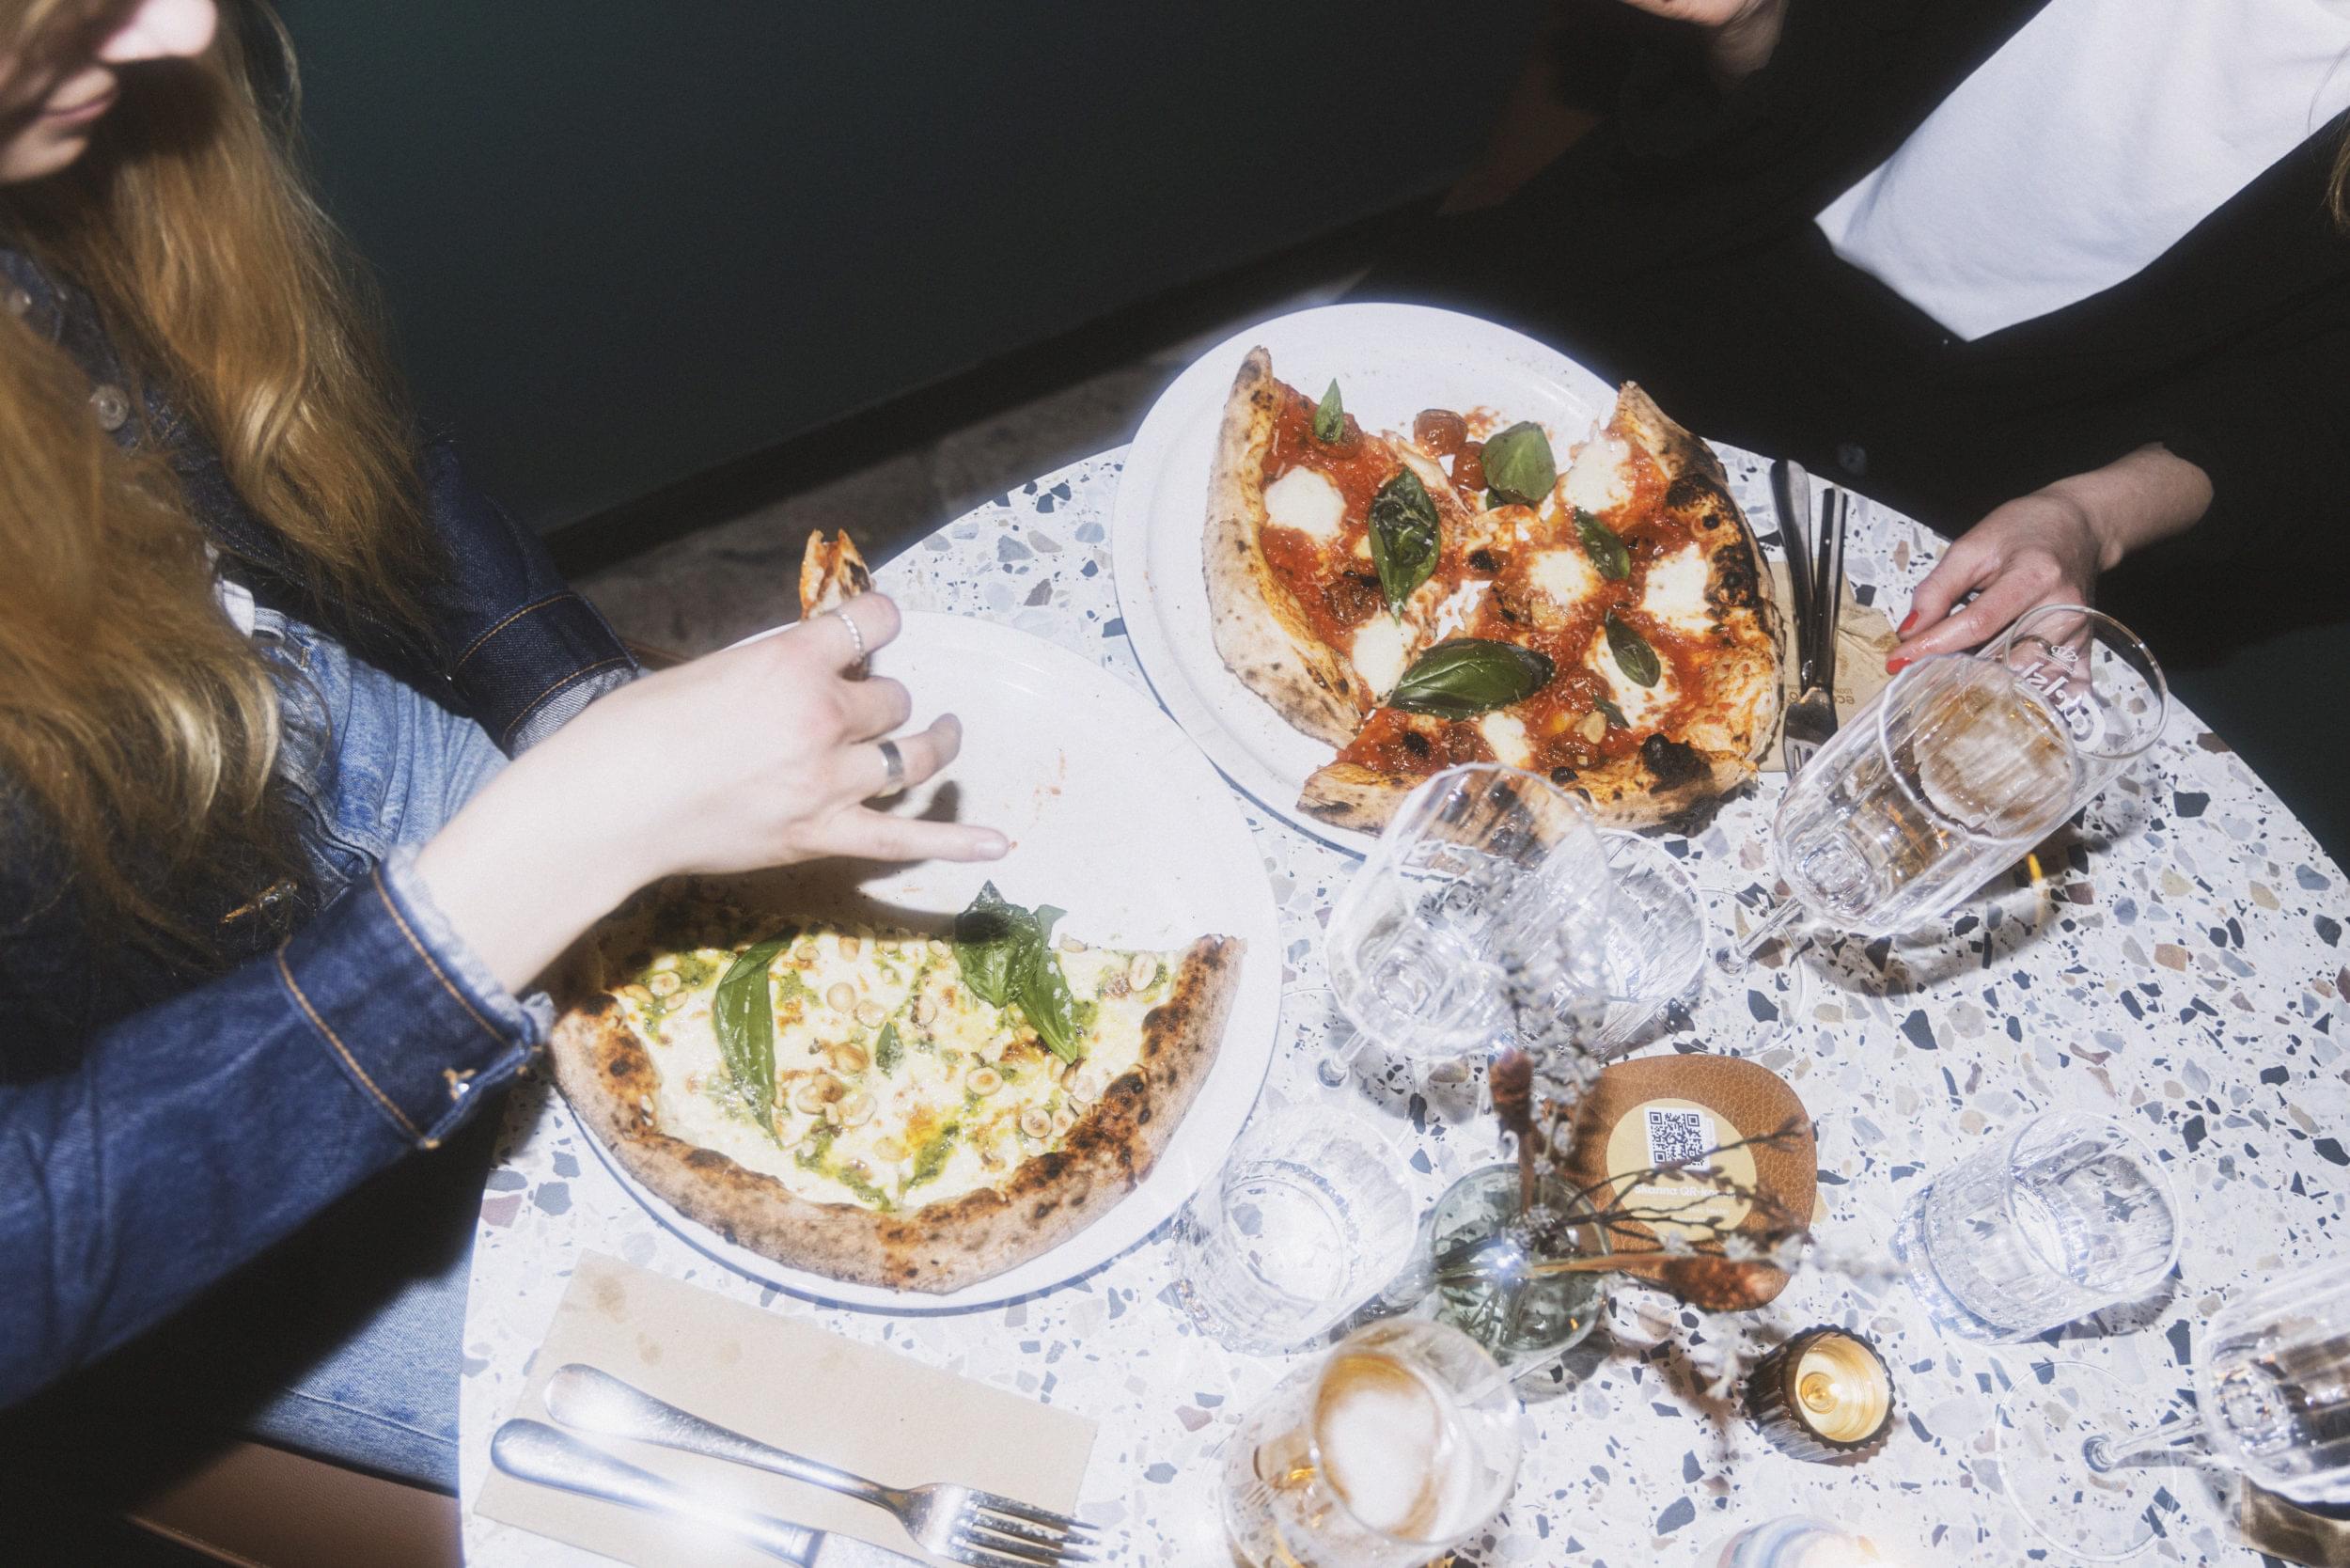 Runt, ljust bord med två pizzor på. Till vänster syns en hand som håller in en pizza slice.